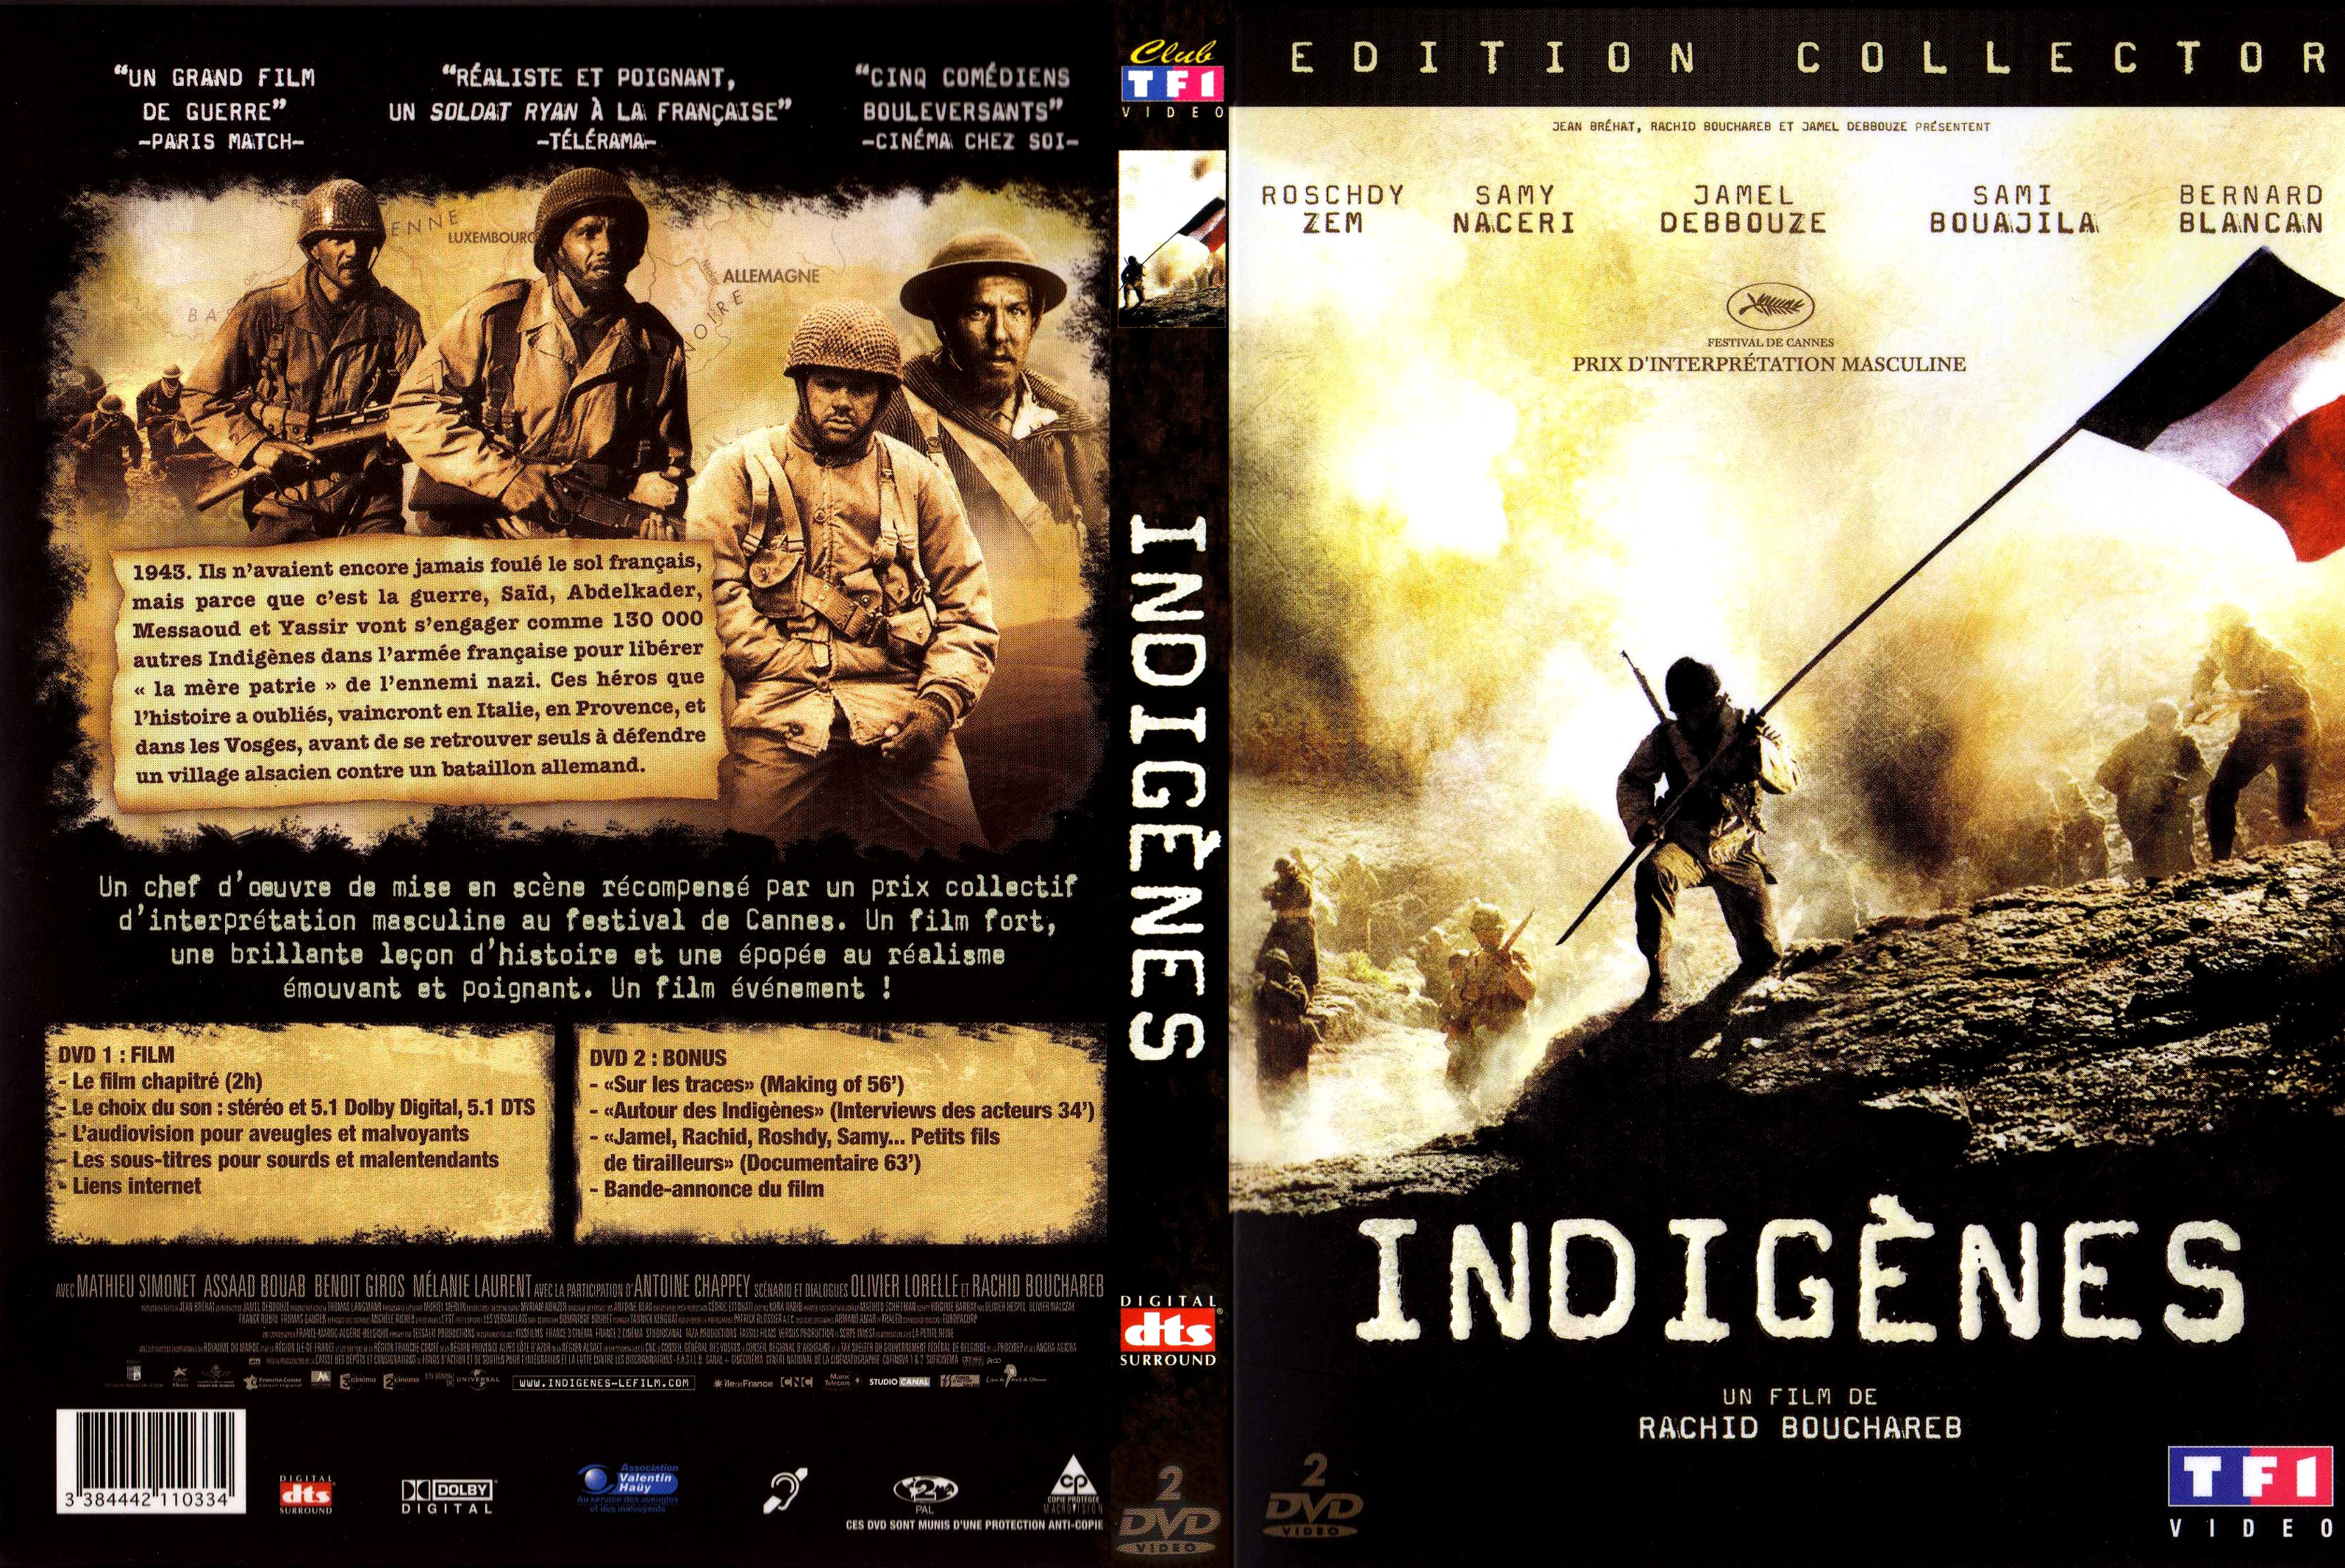 Jaquette DVD Indignes v3